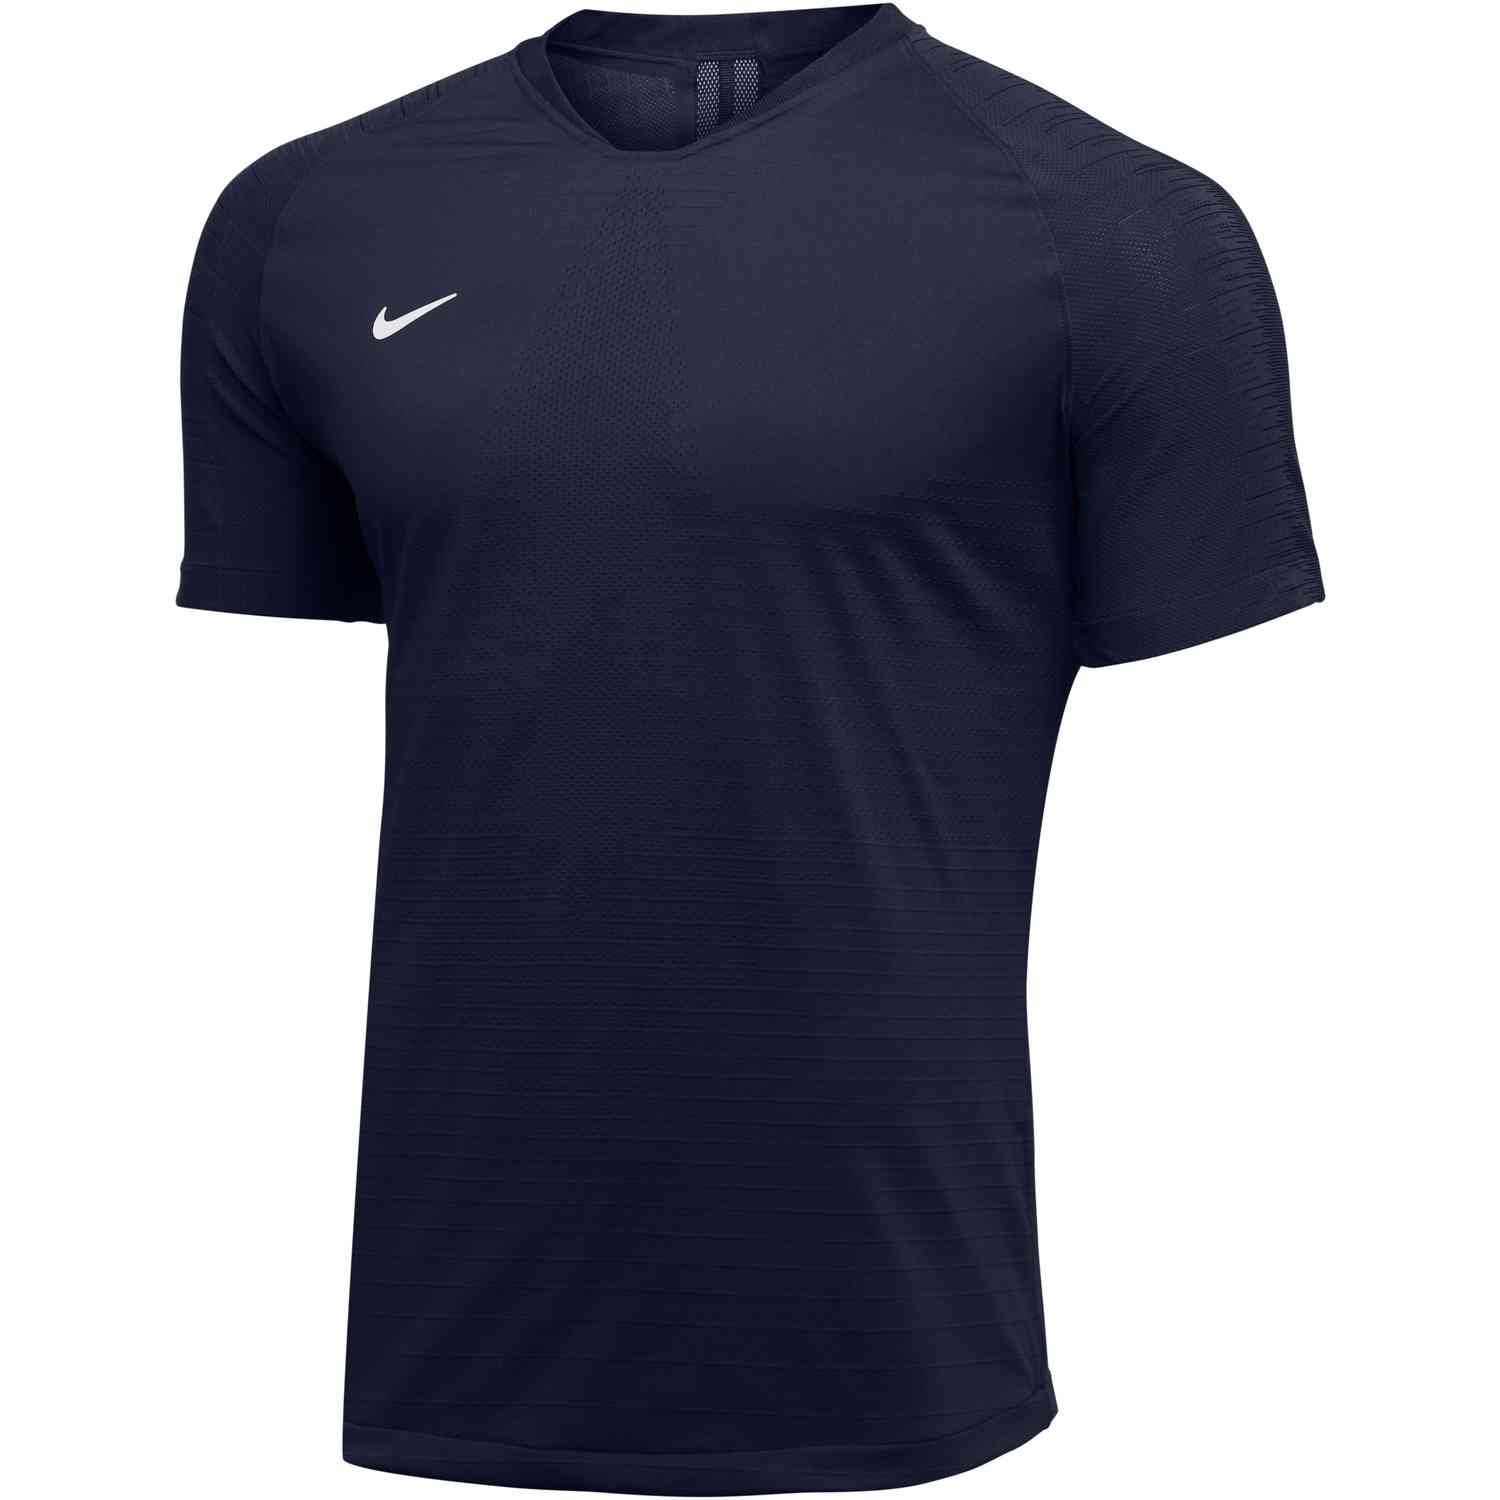 Nike Vaporknit II Jersey - College Navy - SoccerPro